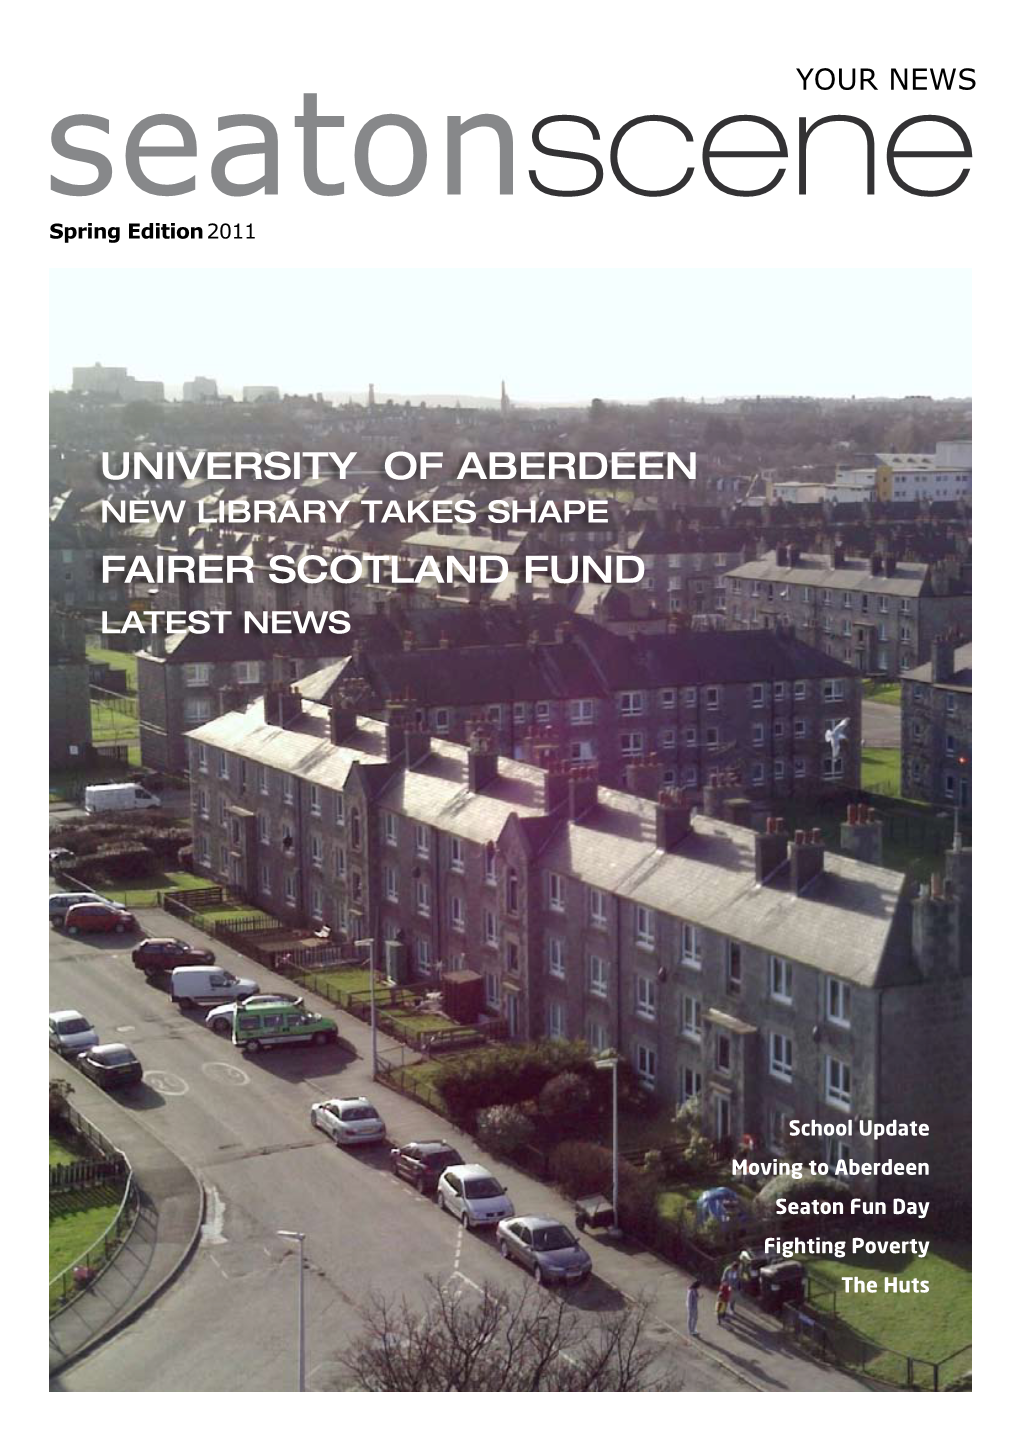 University of Aberdeen Fairer Scotland Fund